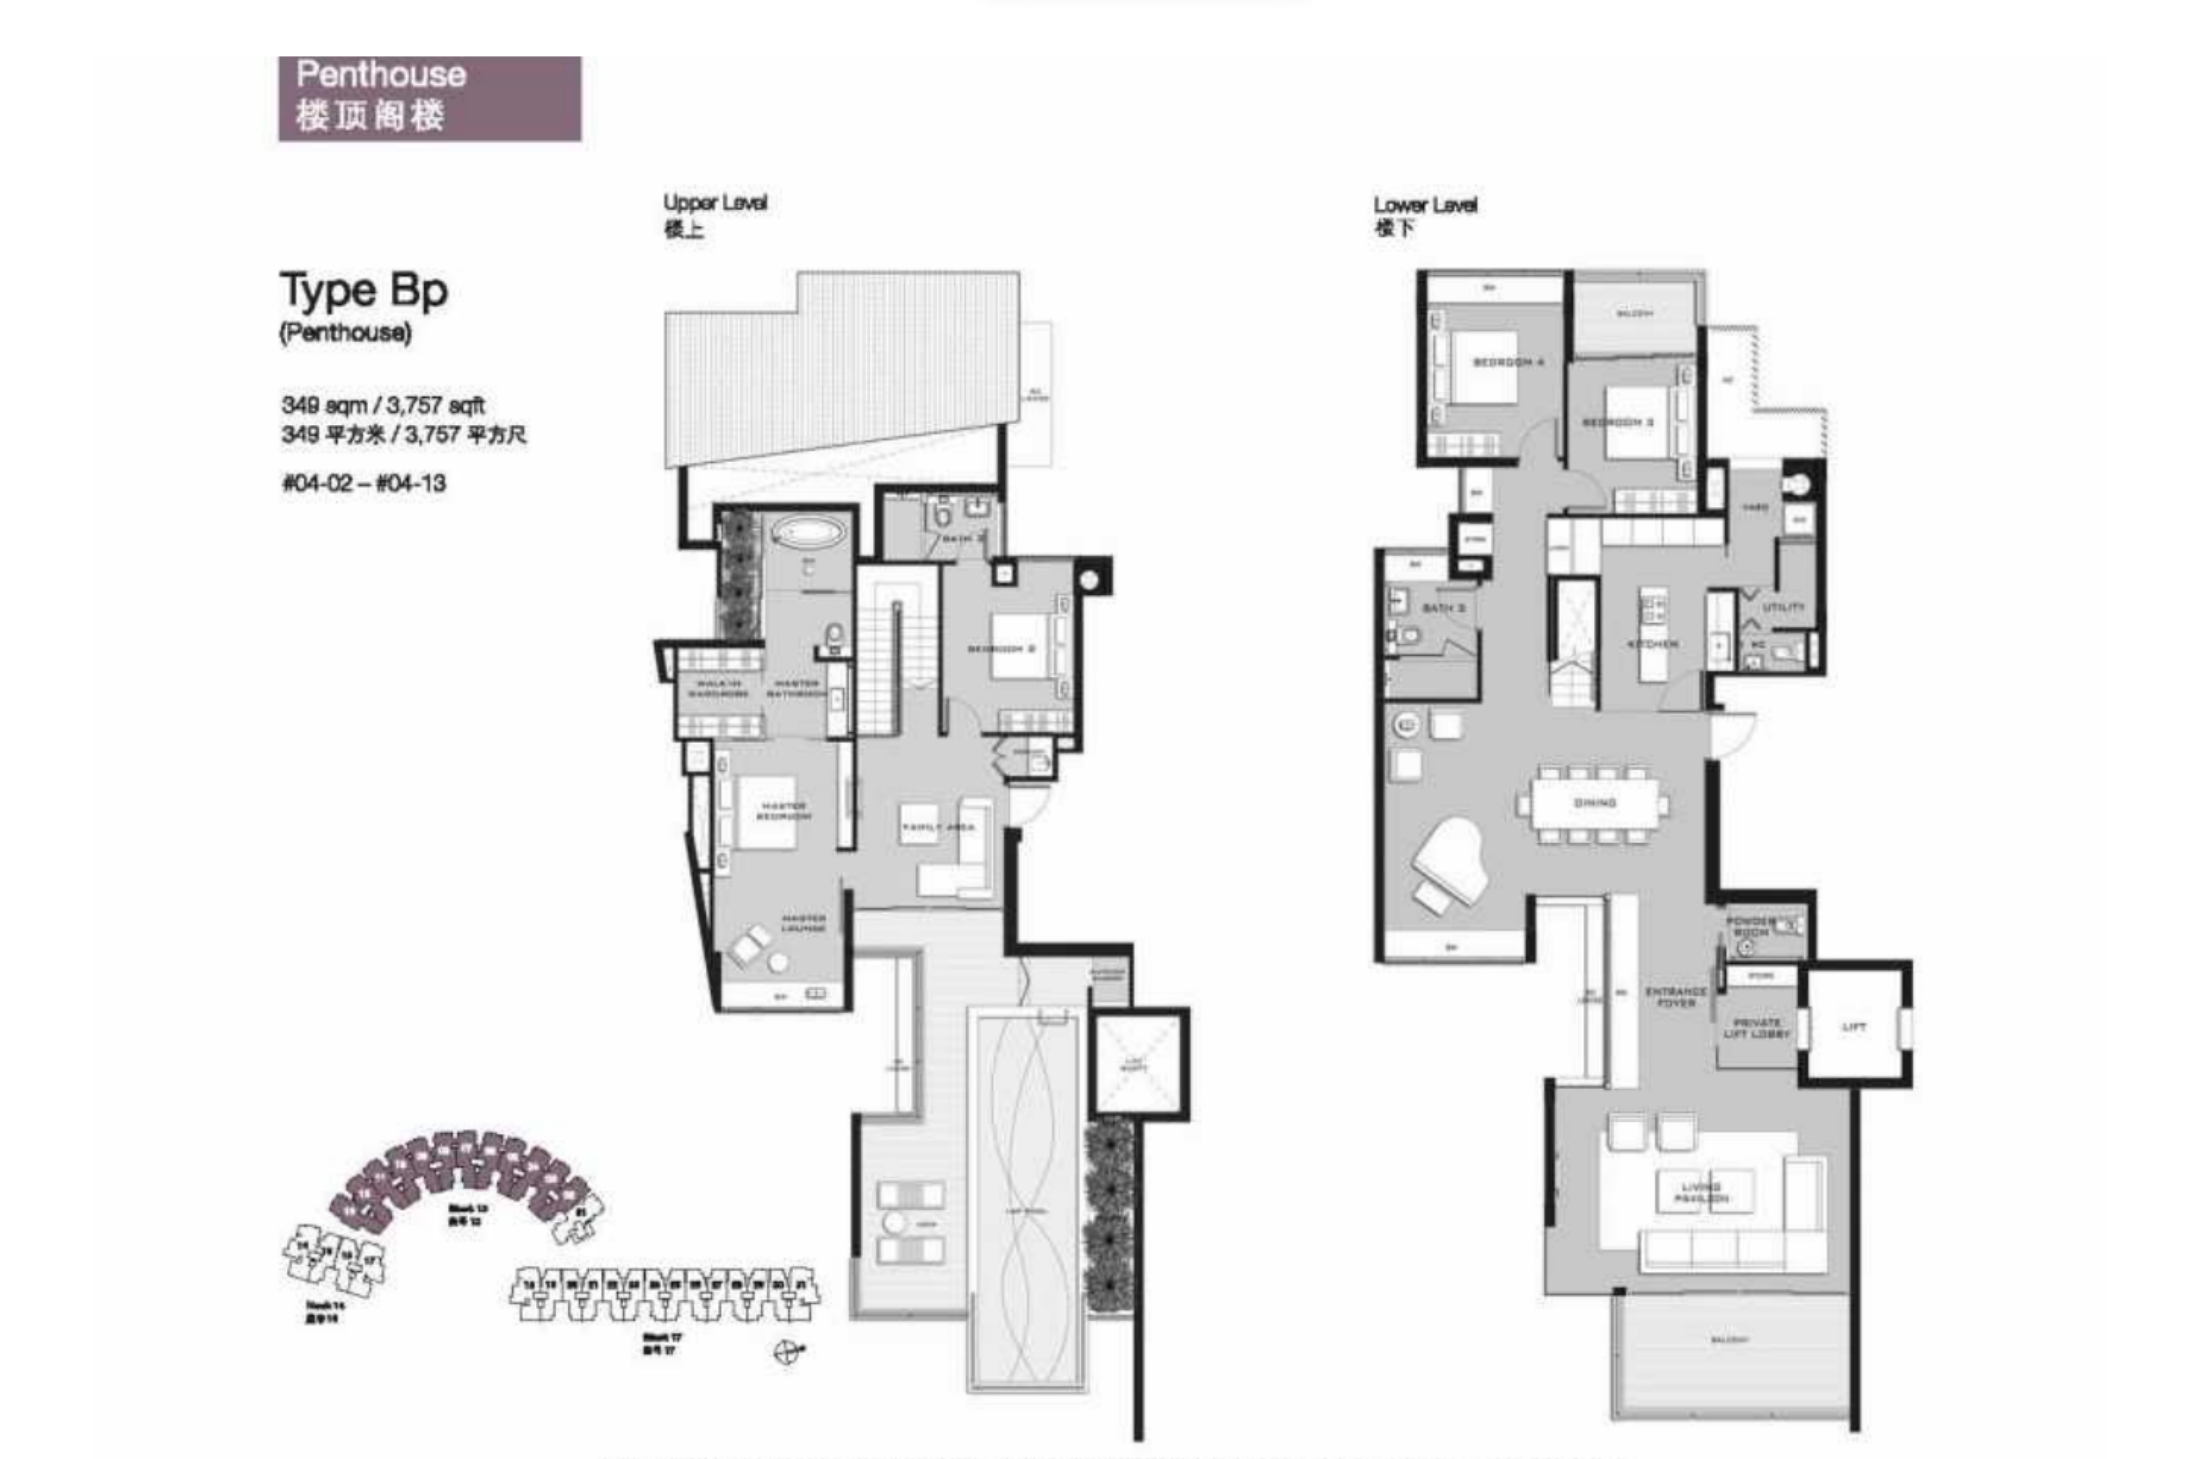 Marina Collection Penthouse Floorplan #04-13